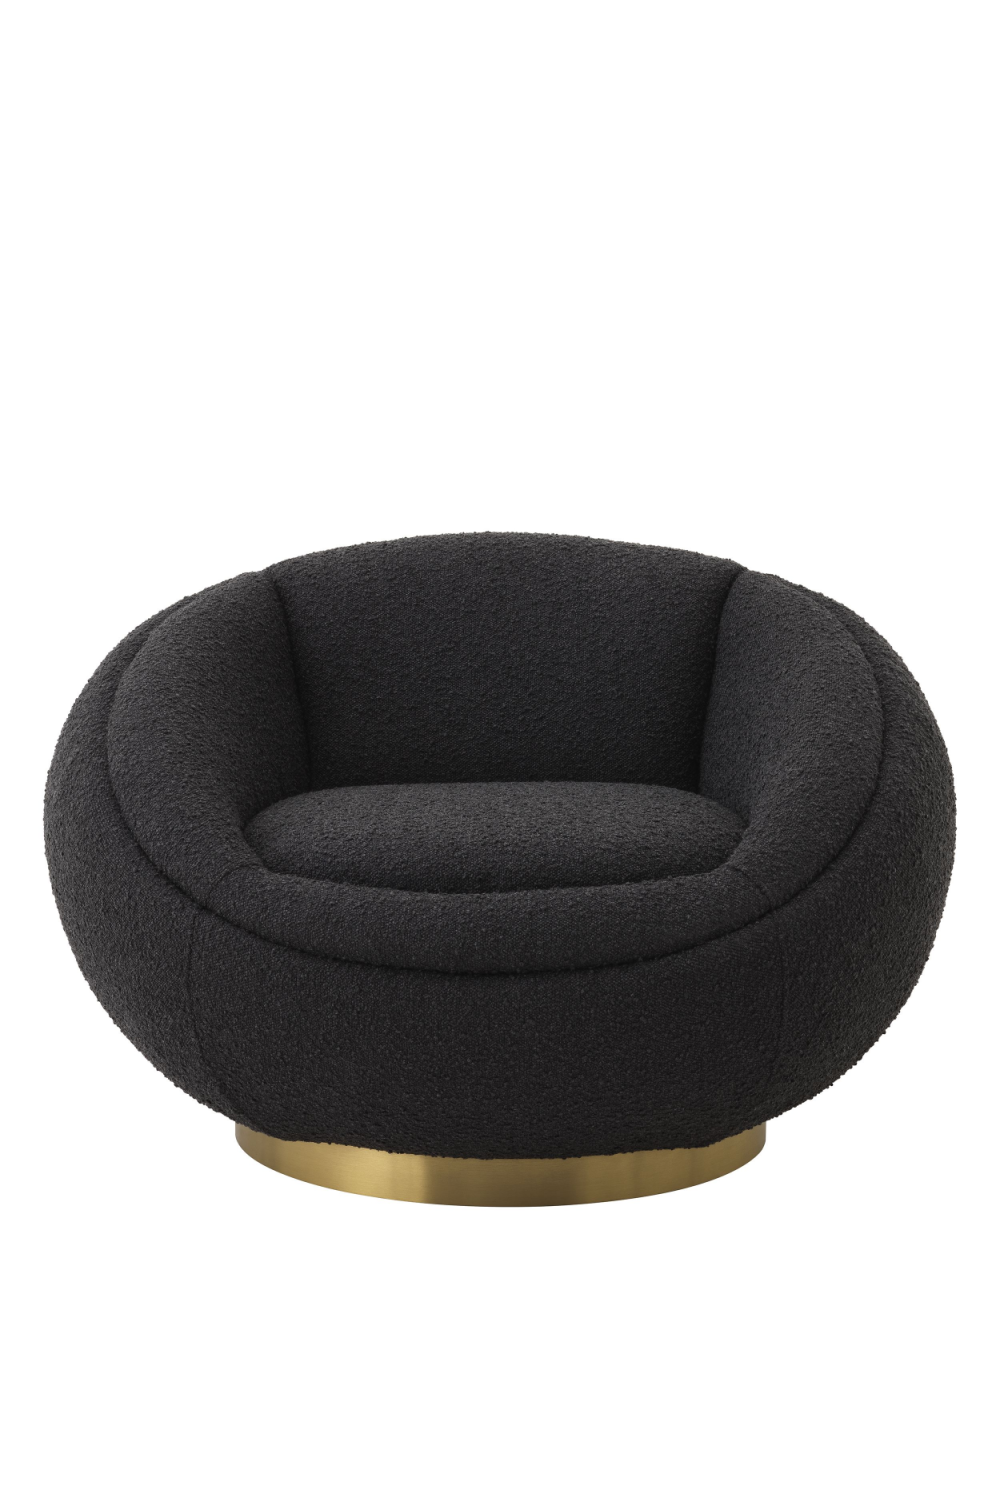 Round Bouclé Swivel Chair | Eichholtz Bollinger | Oroa.com